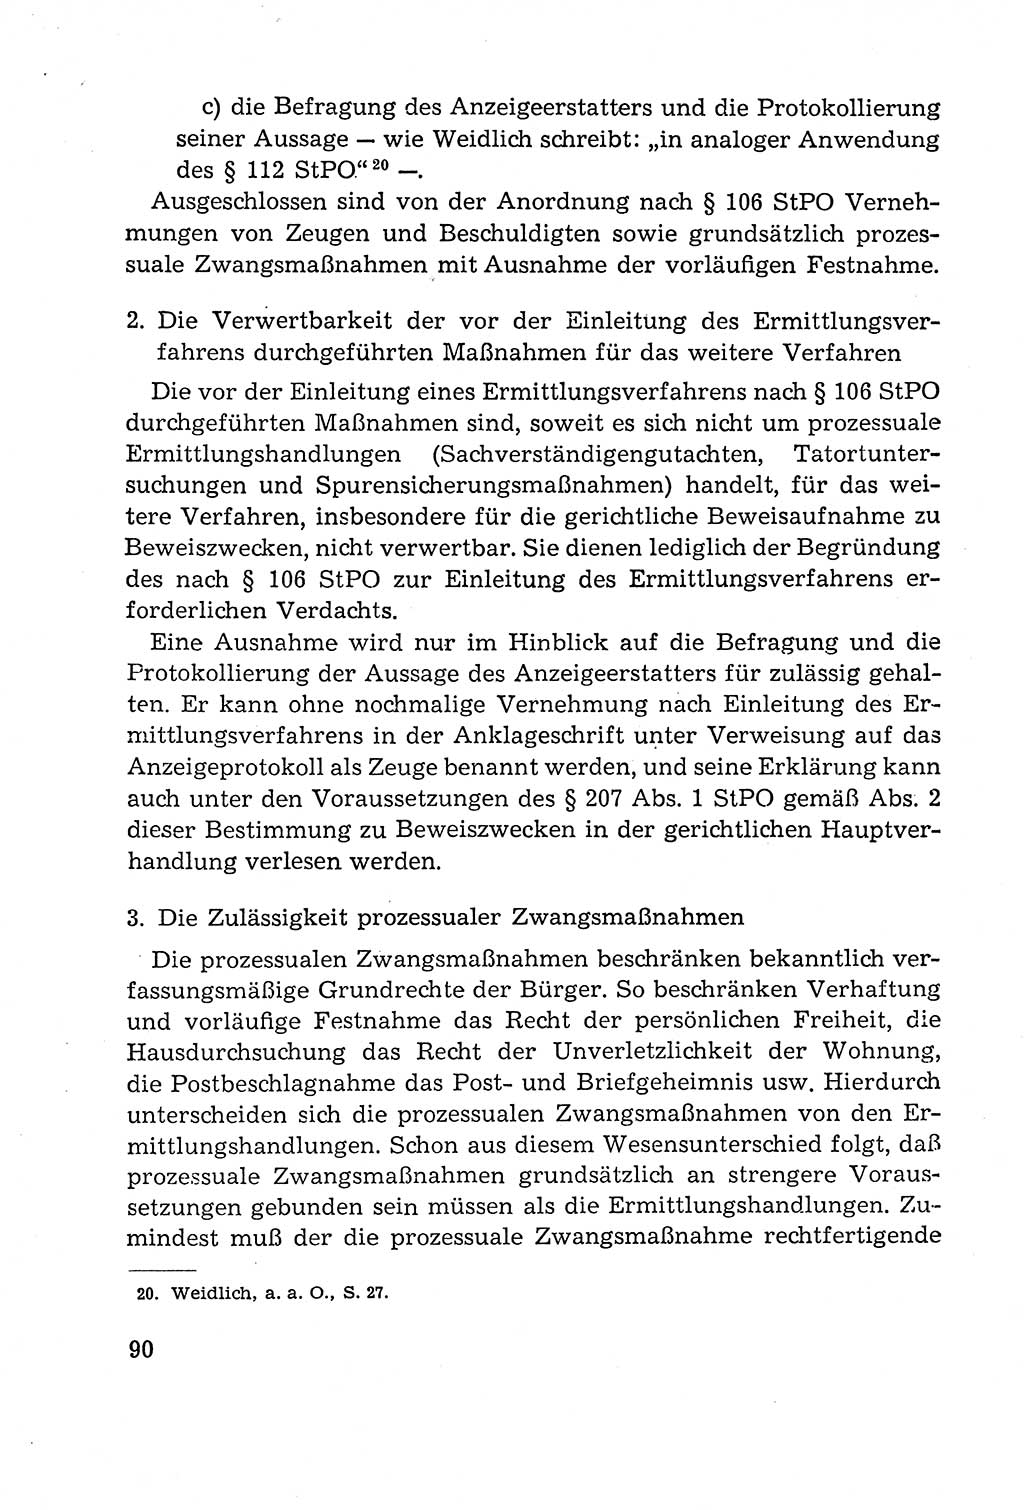 Leitfaden des Strafprozeßrechts der Deutschen Demokratischen Republik (DDR) 1959, Seite 90 (LF StPR DDR 1959, S. 90)